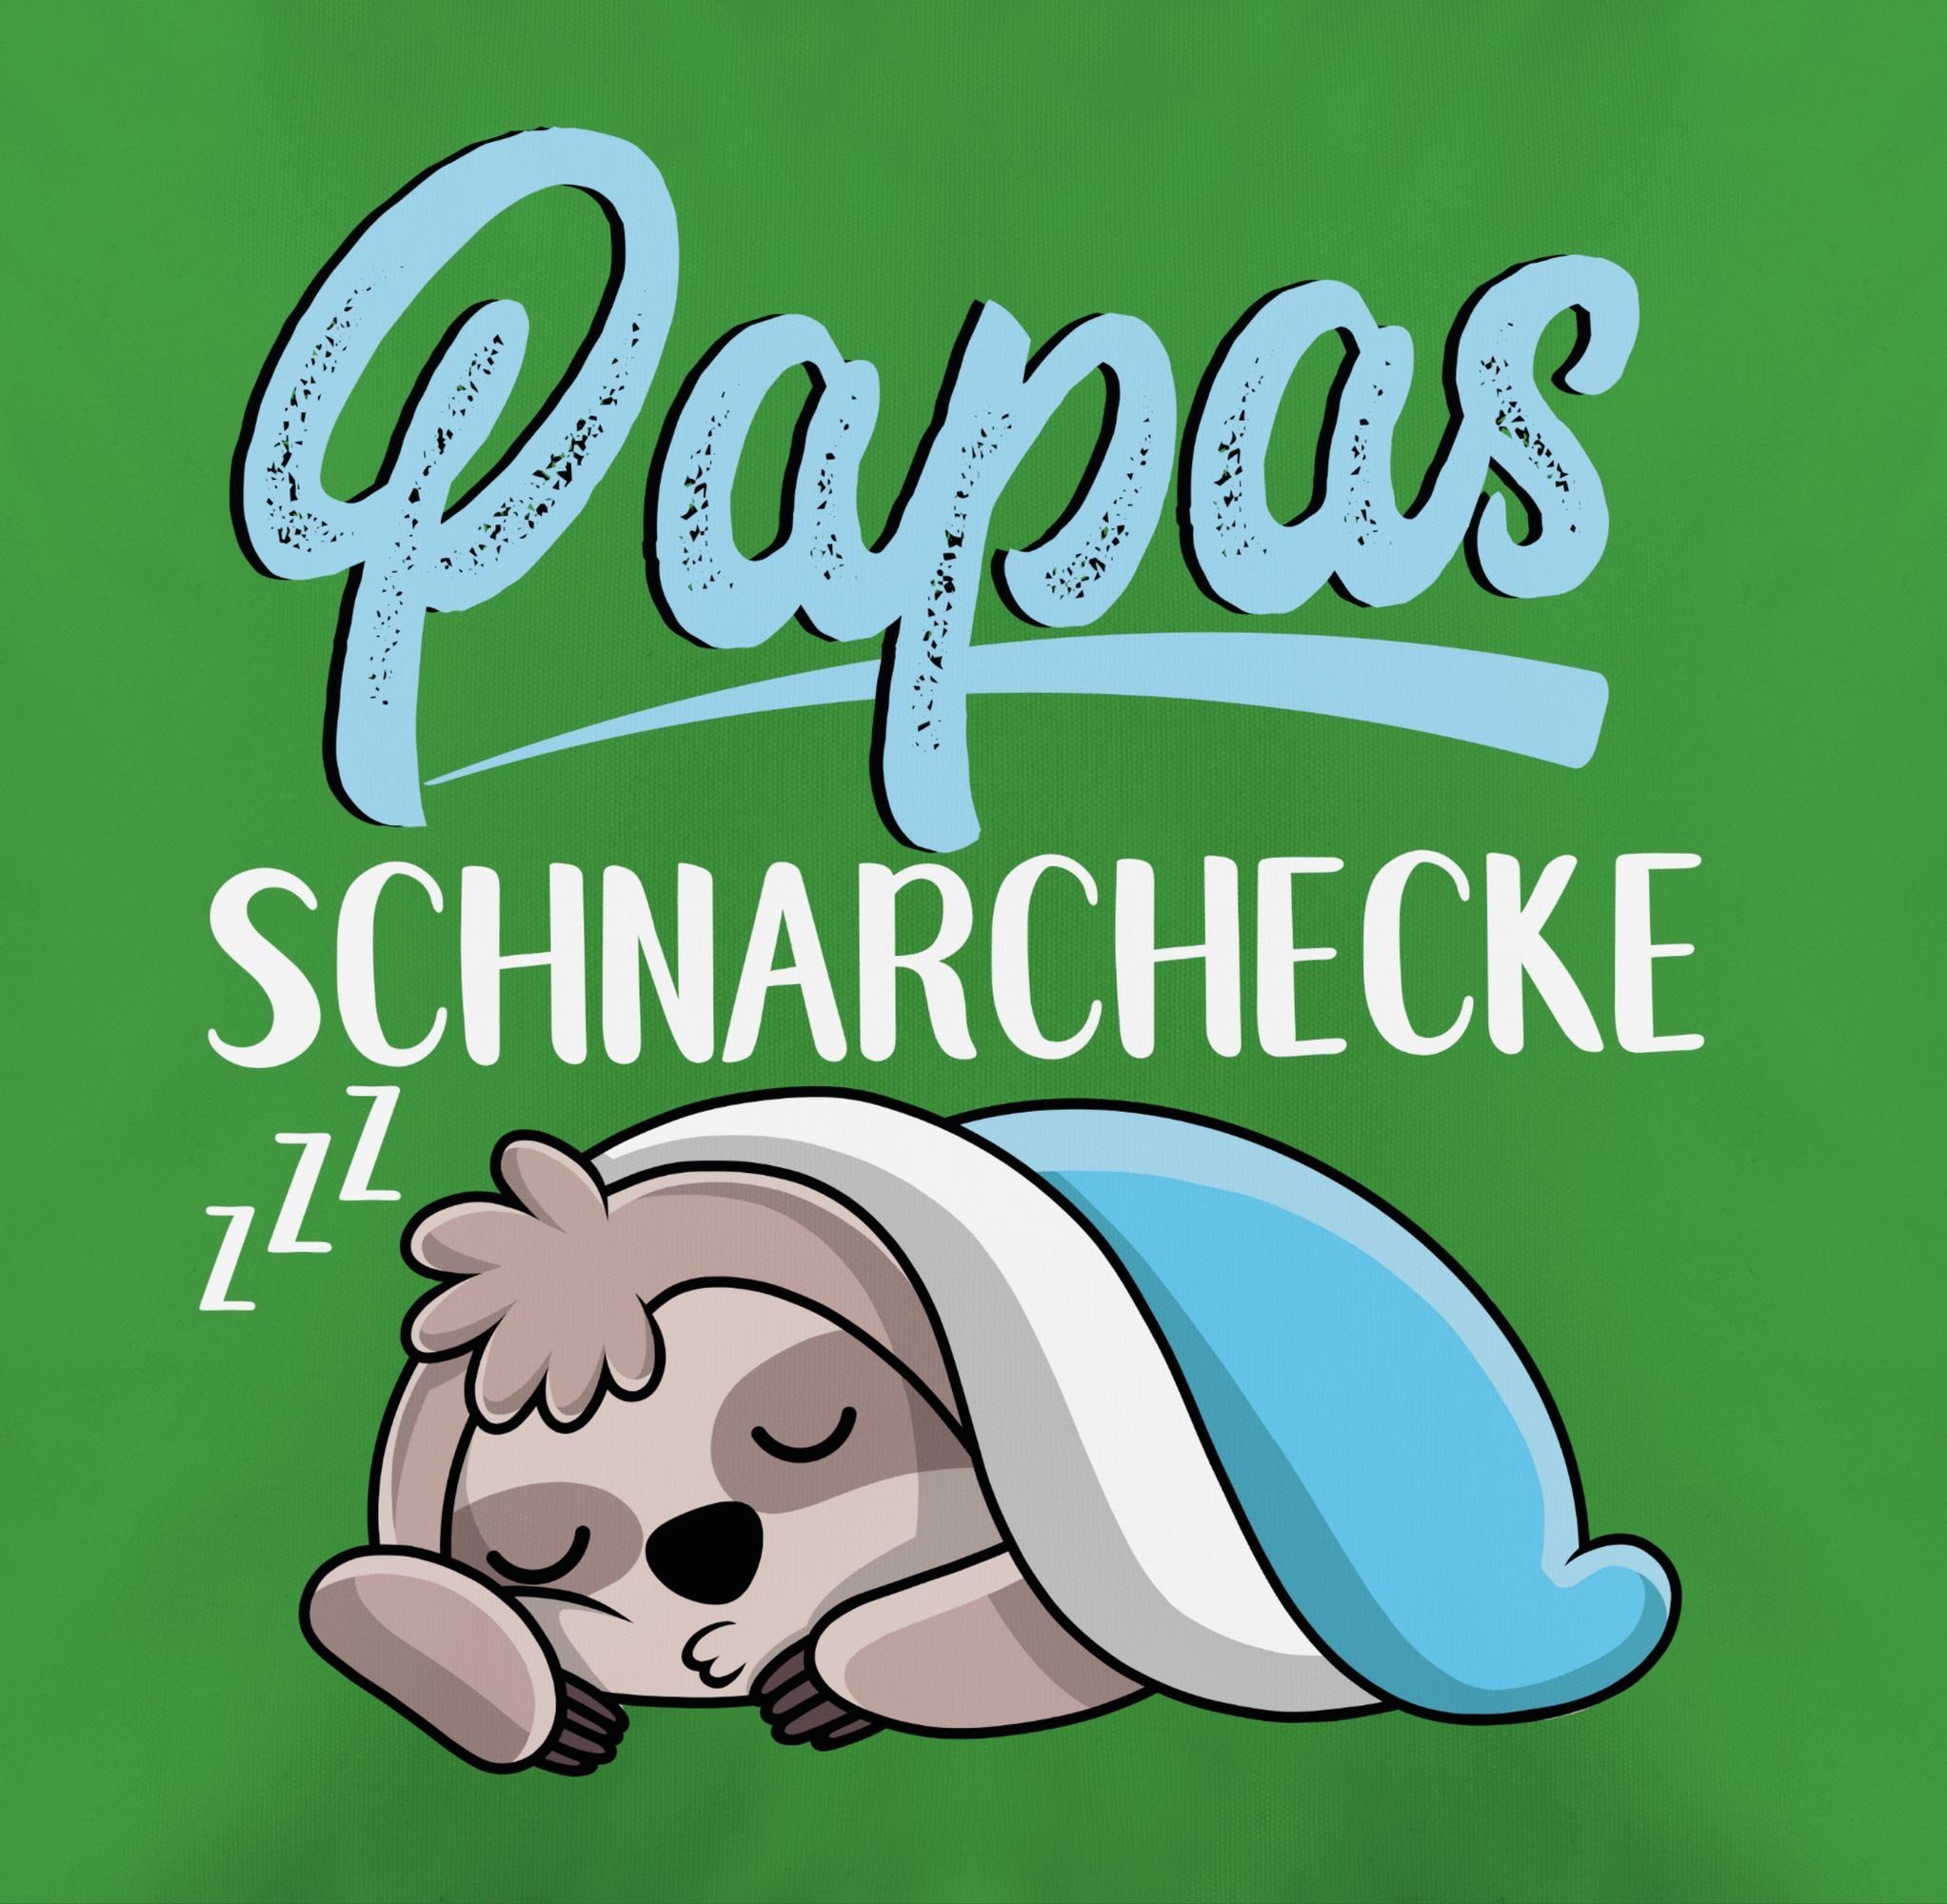 Kissenbezüge Papas Schnarchecke mit Faultier Stück), Vatertagsgeschenk (1 - weiß, Kissen Shirtracer